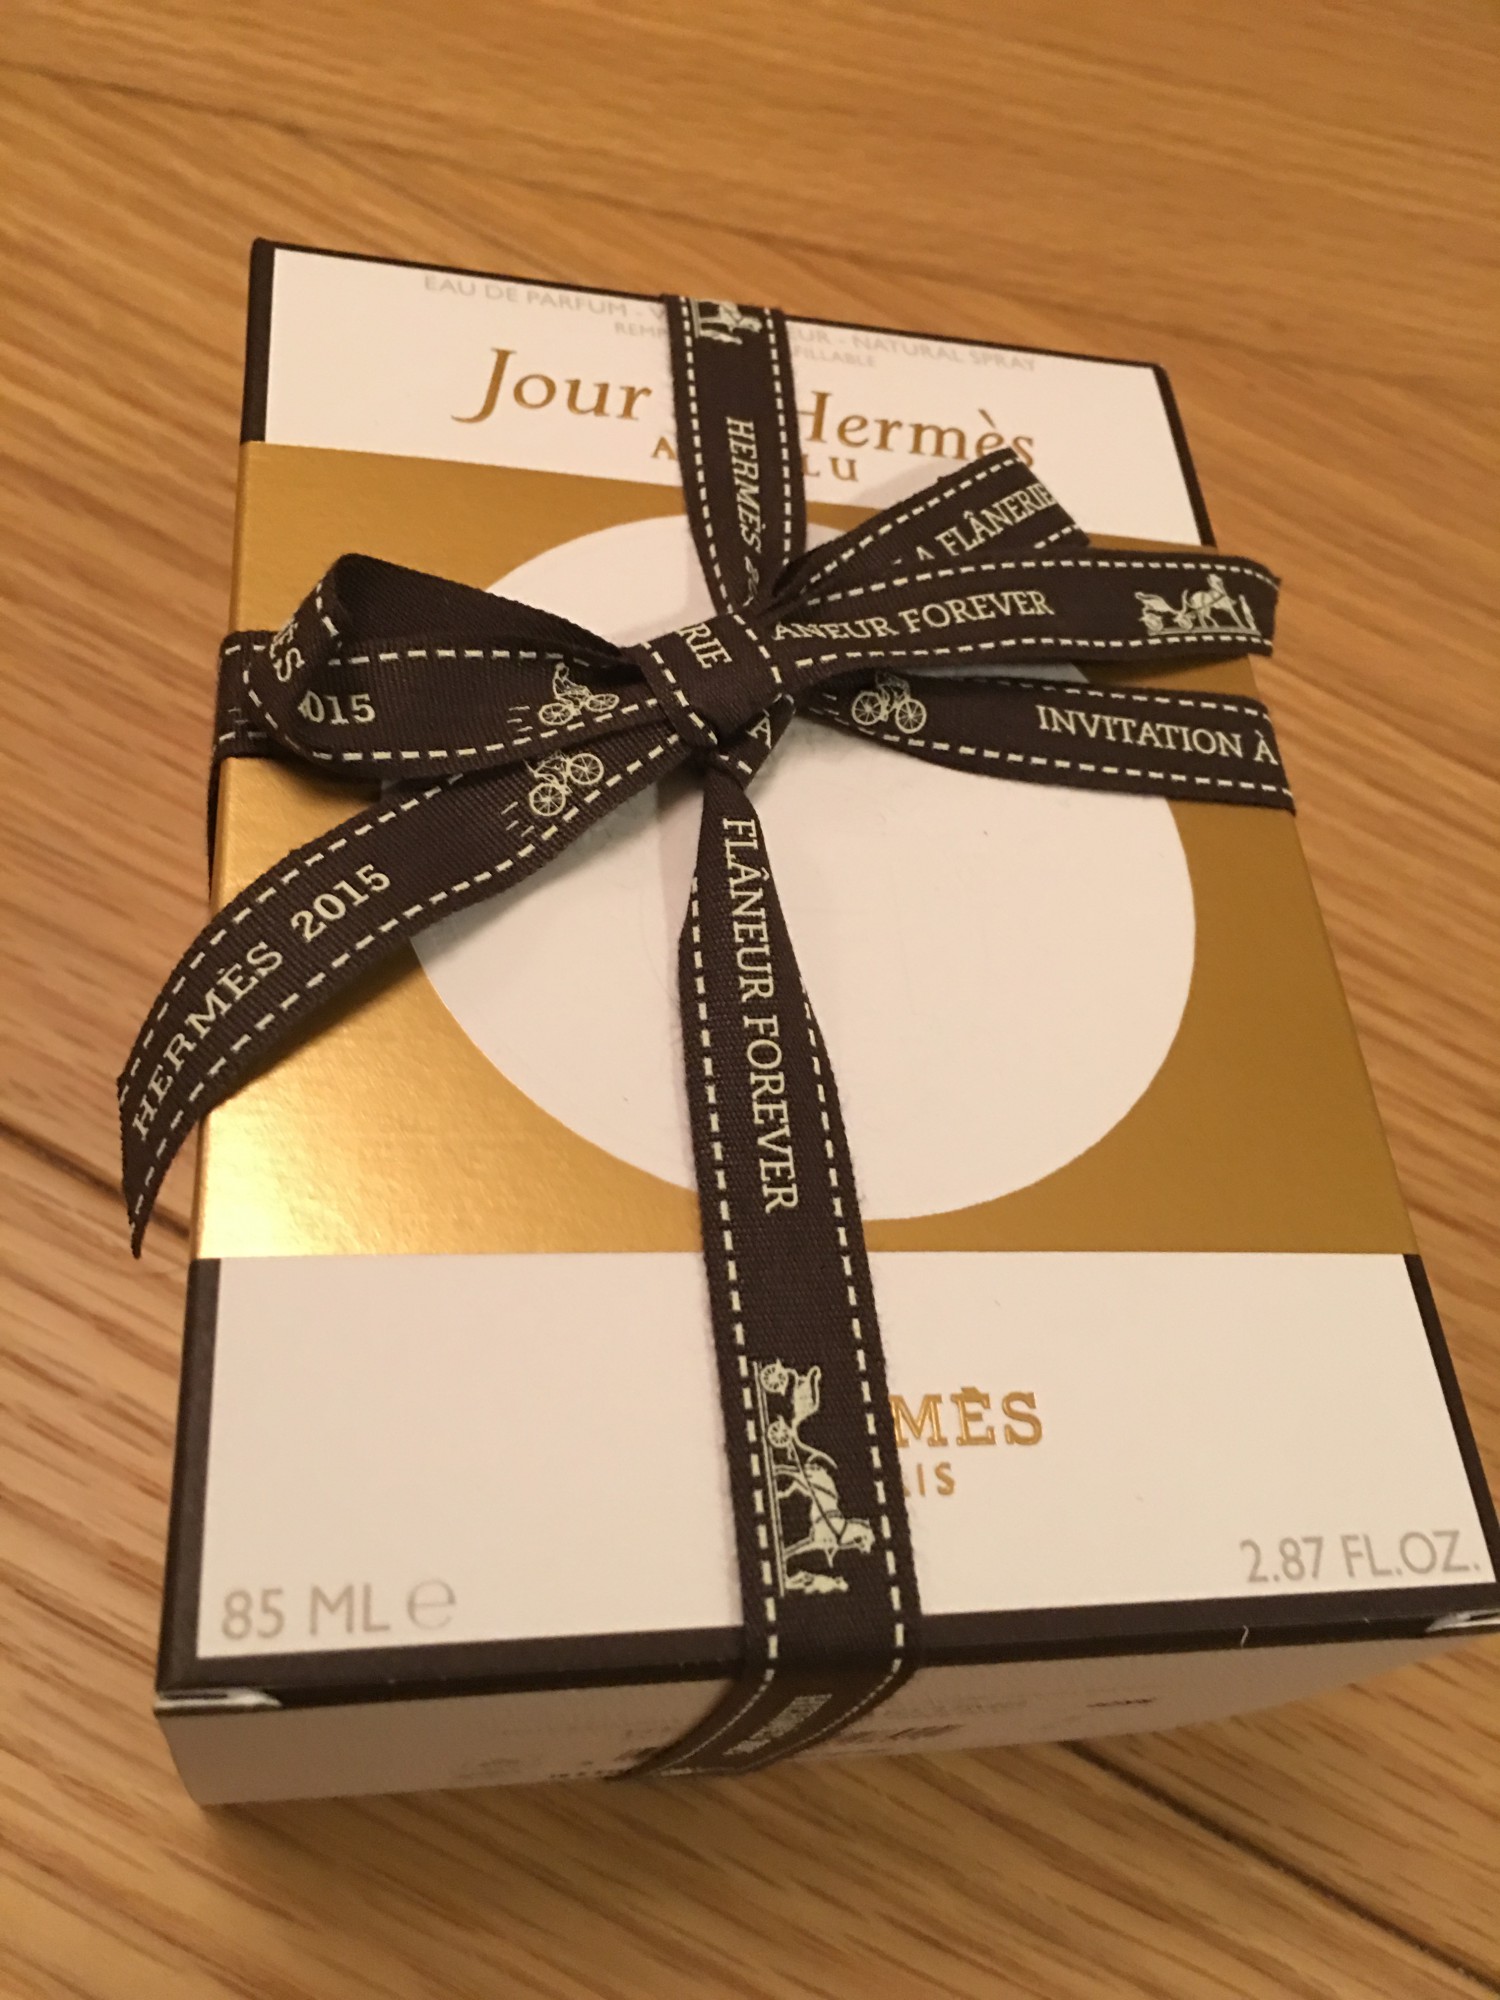 エルメス（HERMES）香水ジュール・ドゥ・エルメス（Jour d’Hermes）と 石鹸 と Jo MALONE LONDON(ジョー